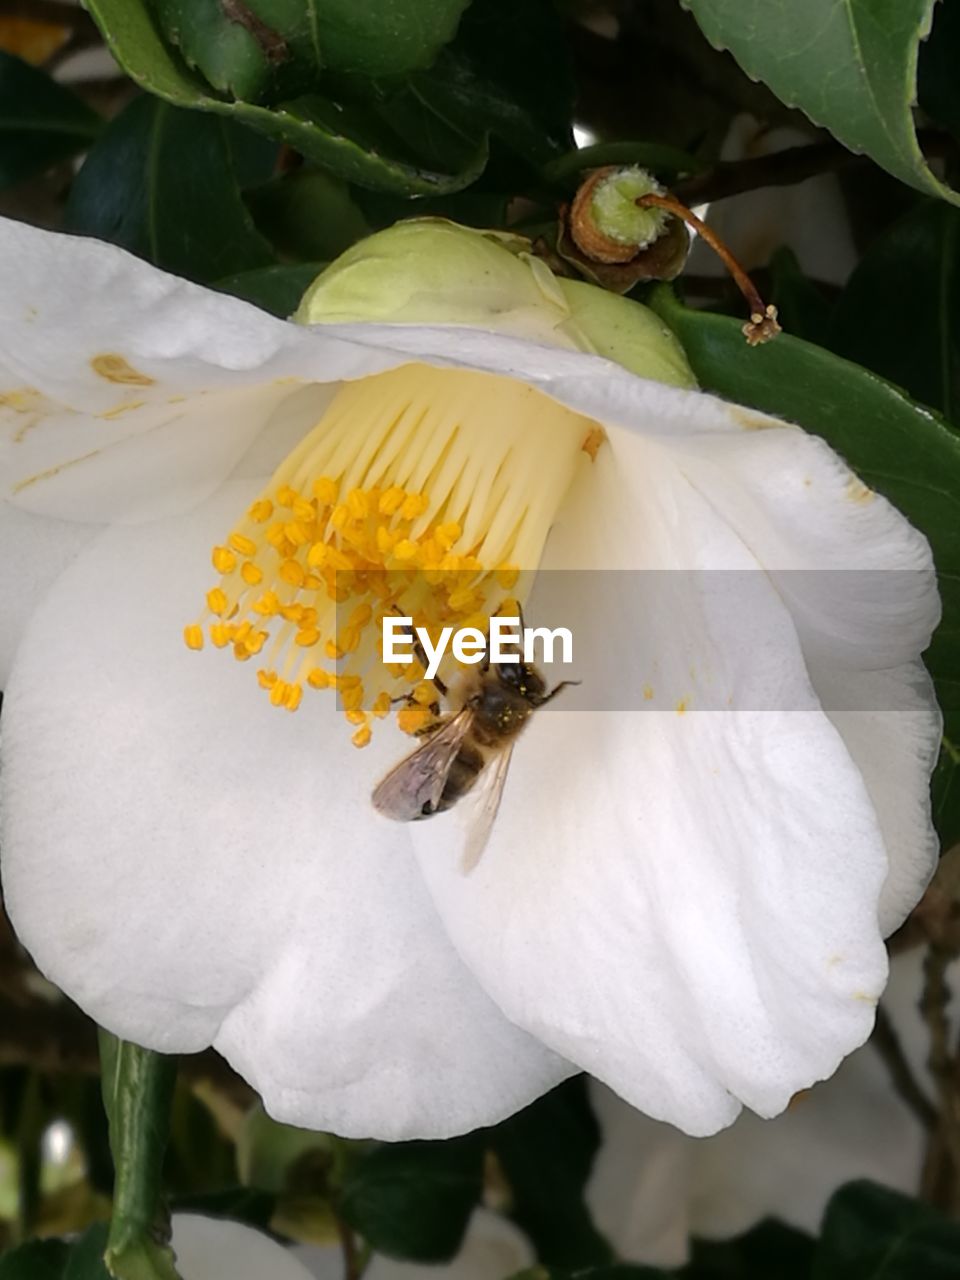 HONEY BEE ON WHITE FLOWER